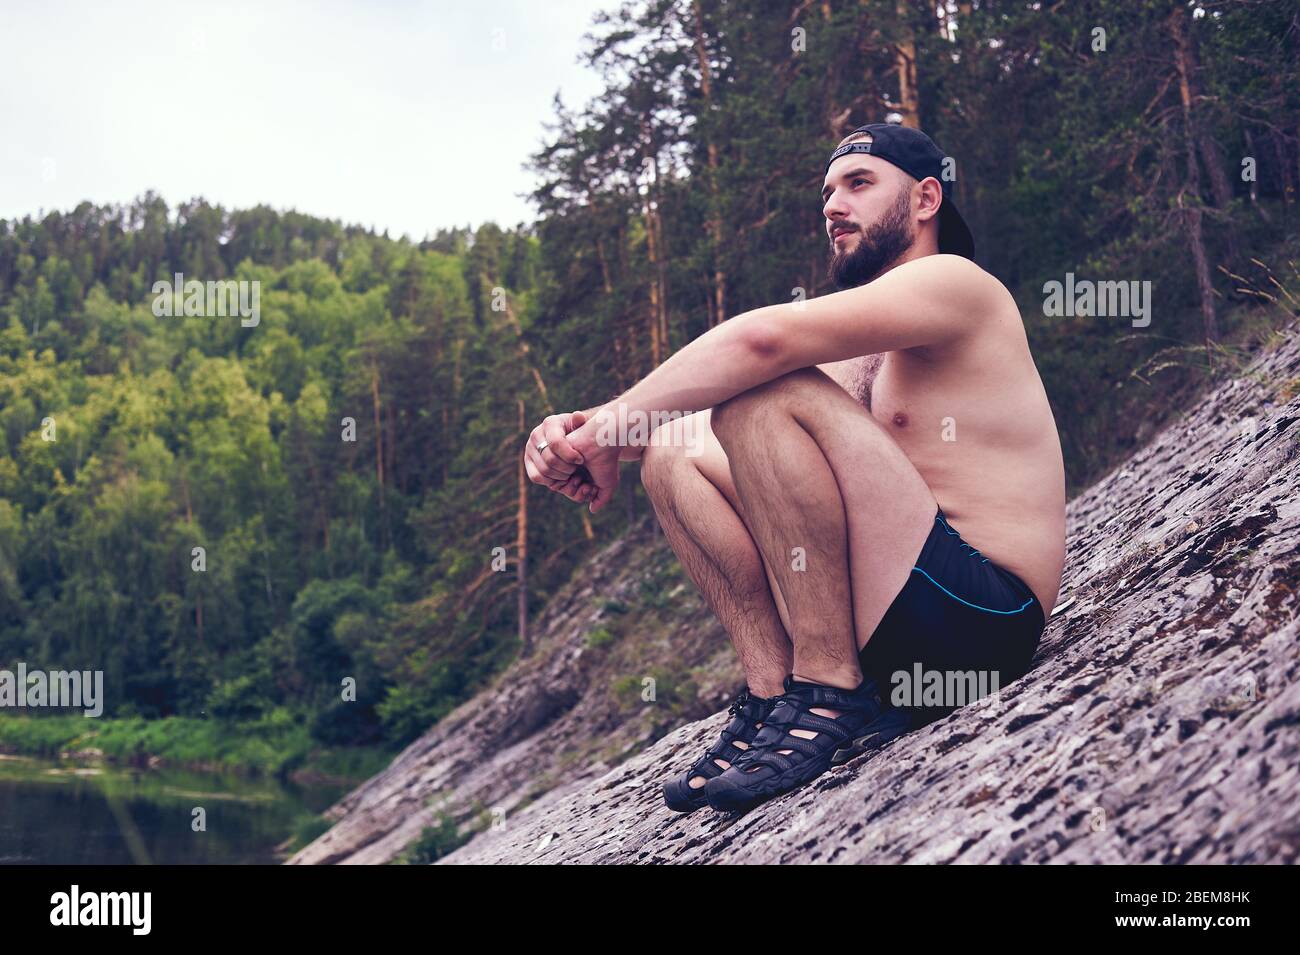 Disfrutar de la vida. Un joven se encuentra en un bivouac en el bosque., relajación, vacaciones, concepto de estilo de vida Foto de stock